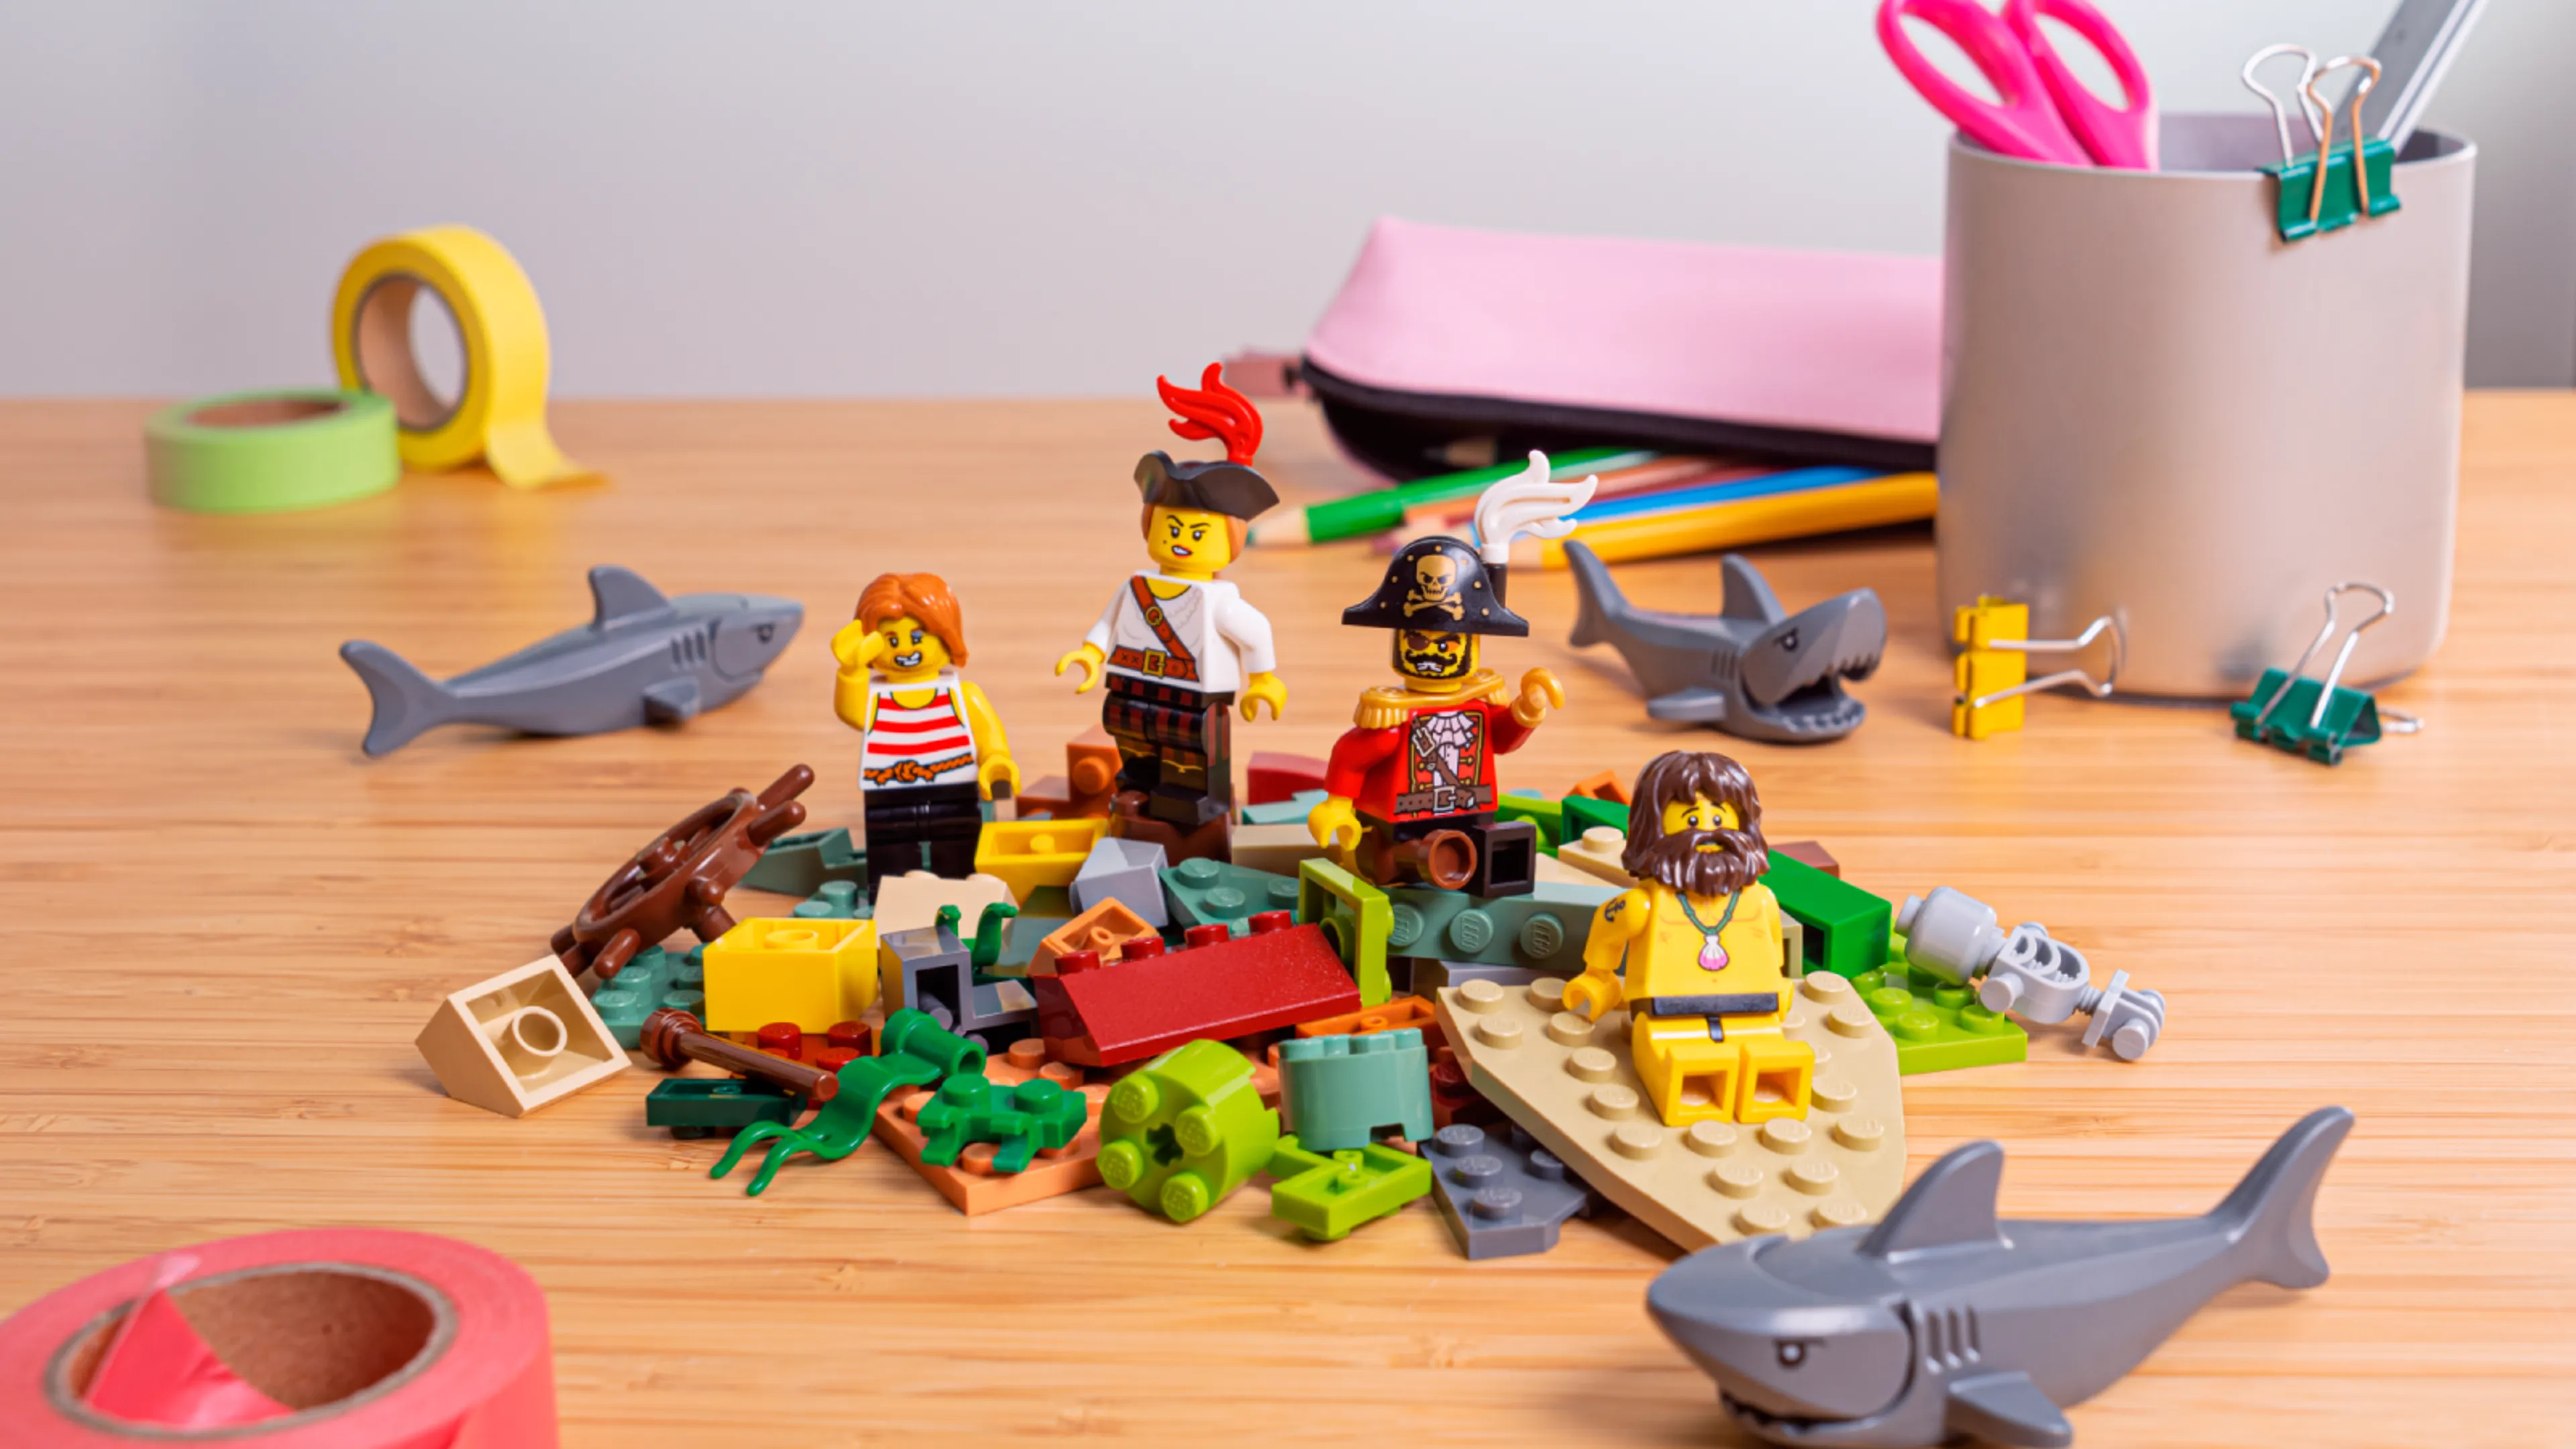 Minifigurines assises au sommet d’une pile de briques LEGO